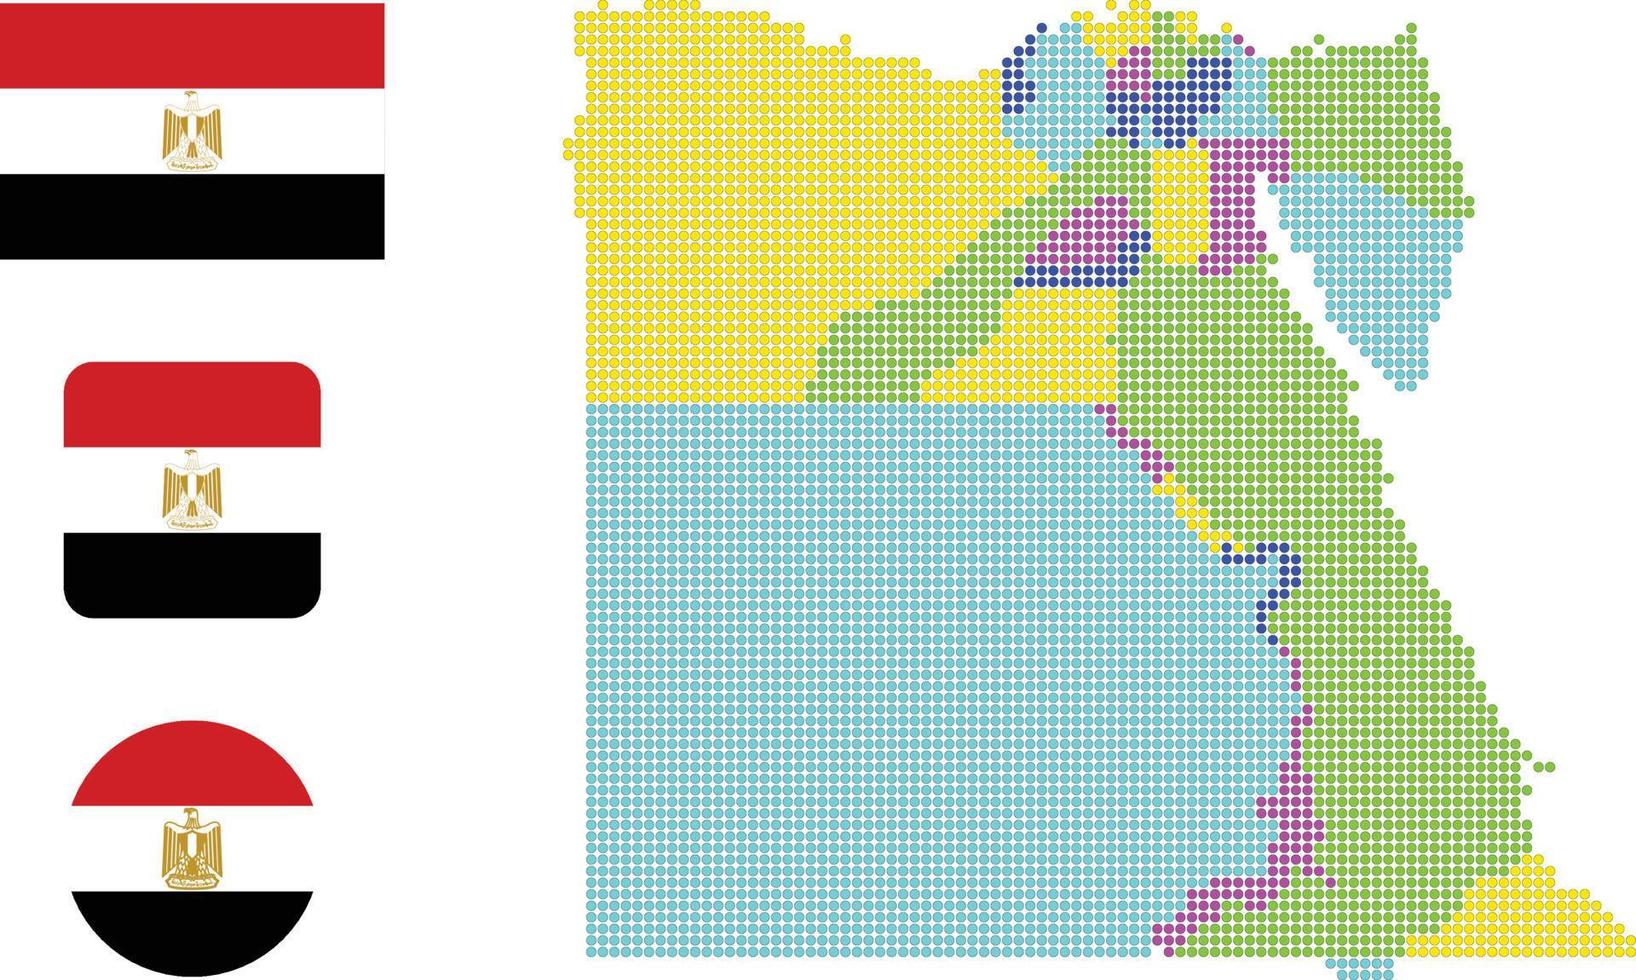 egyp mapa y bandera plana icono símbolo vector ilustración